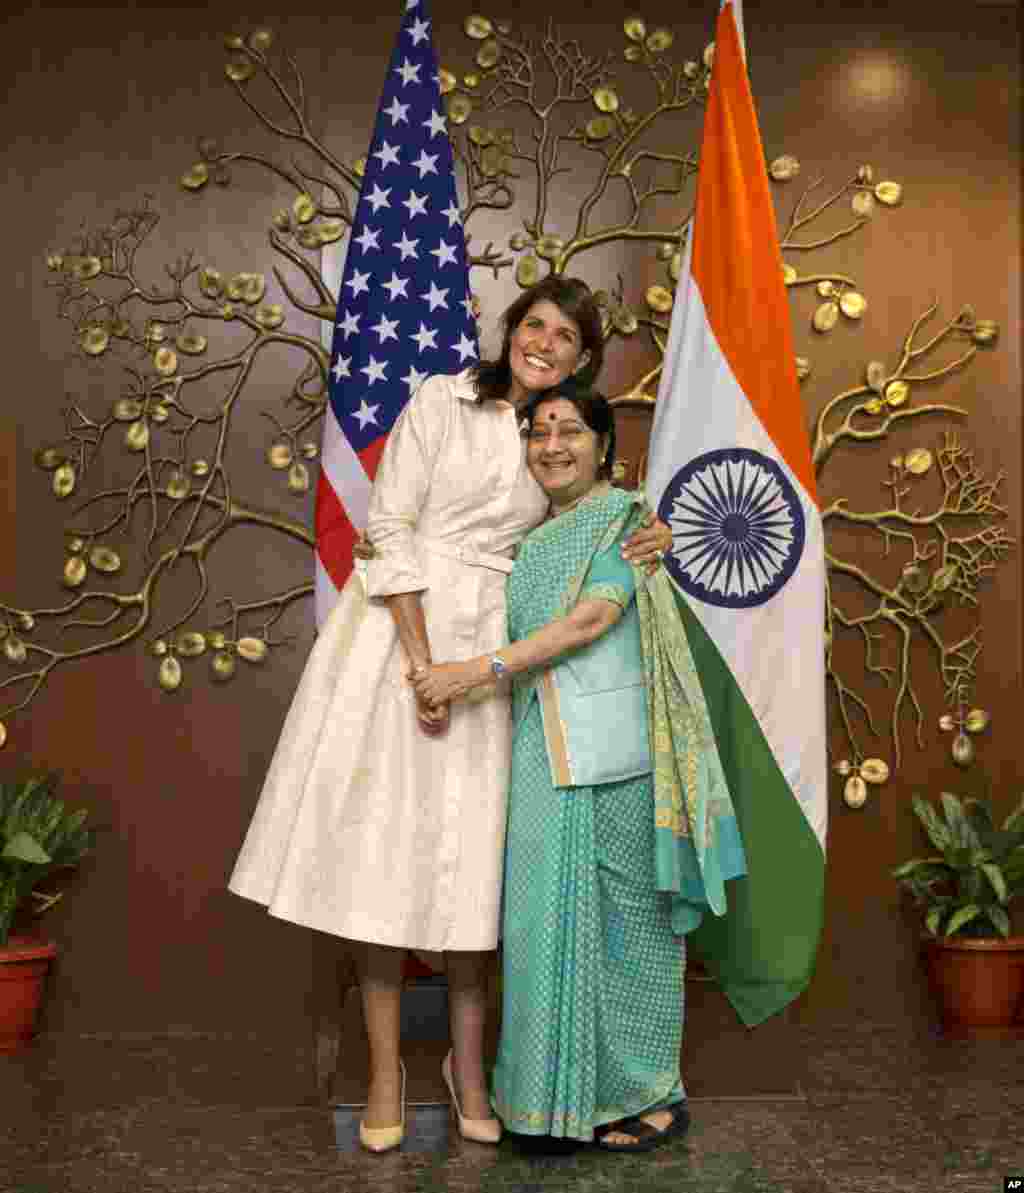 عکس یادگاری نیکی هیلی با وزیر امور خارجه هند. خانم هیلی که هندی تبار است، متولد آمریکا و اکنون سفیر آمریکا در سازمان ملل متحد است.